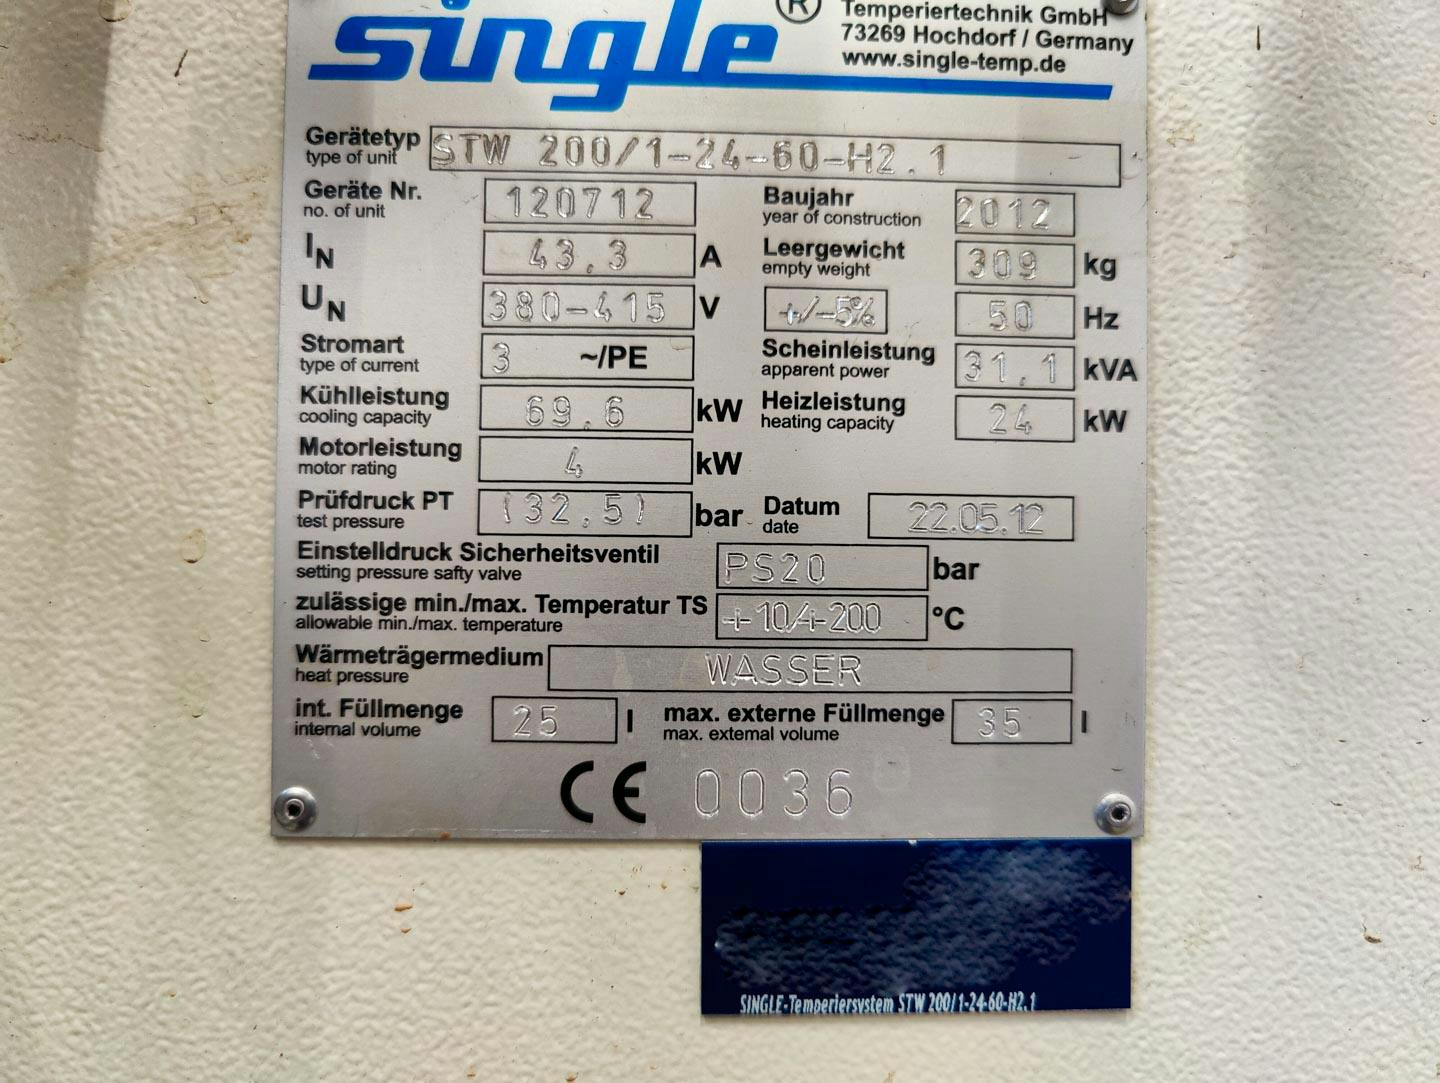 Single Temperiertechnik STW 200/1-24.60-H2.1 - Unidade de fluido térmico - image 7